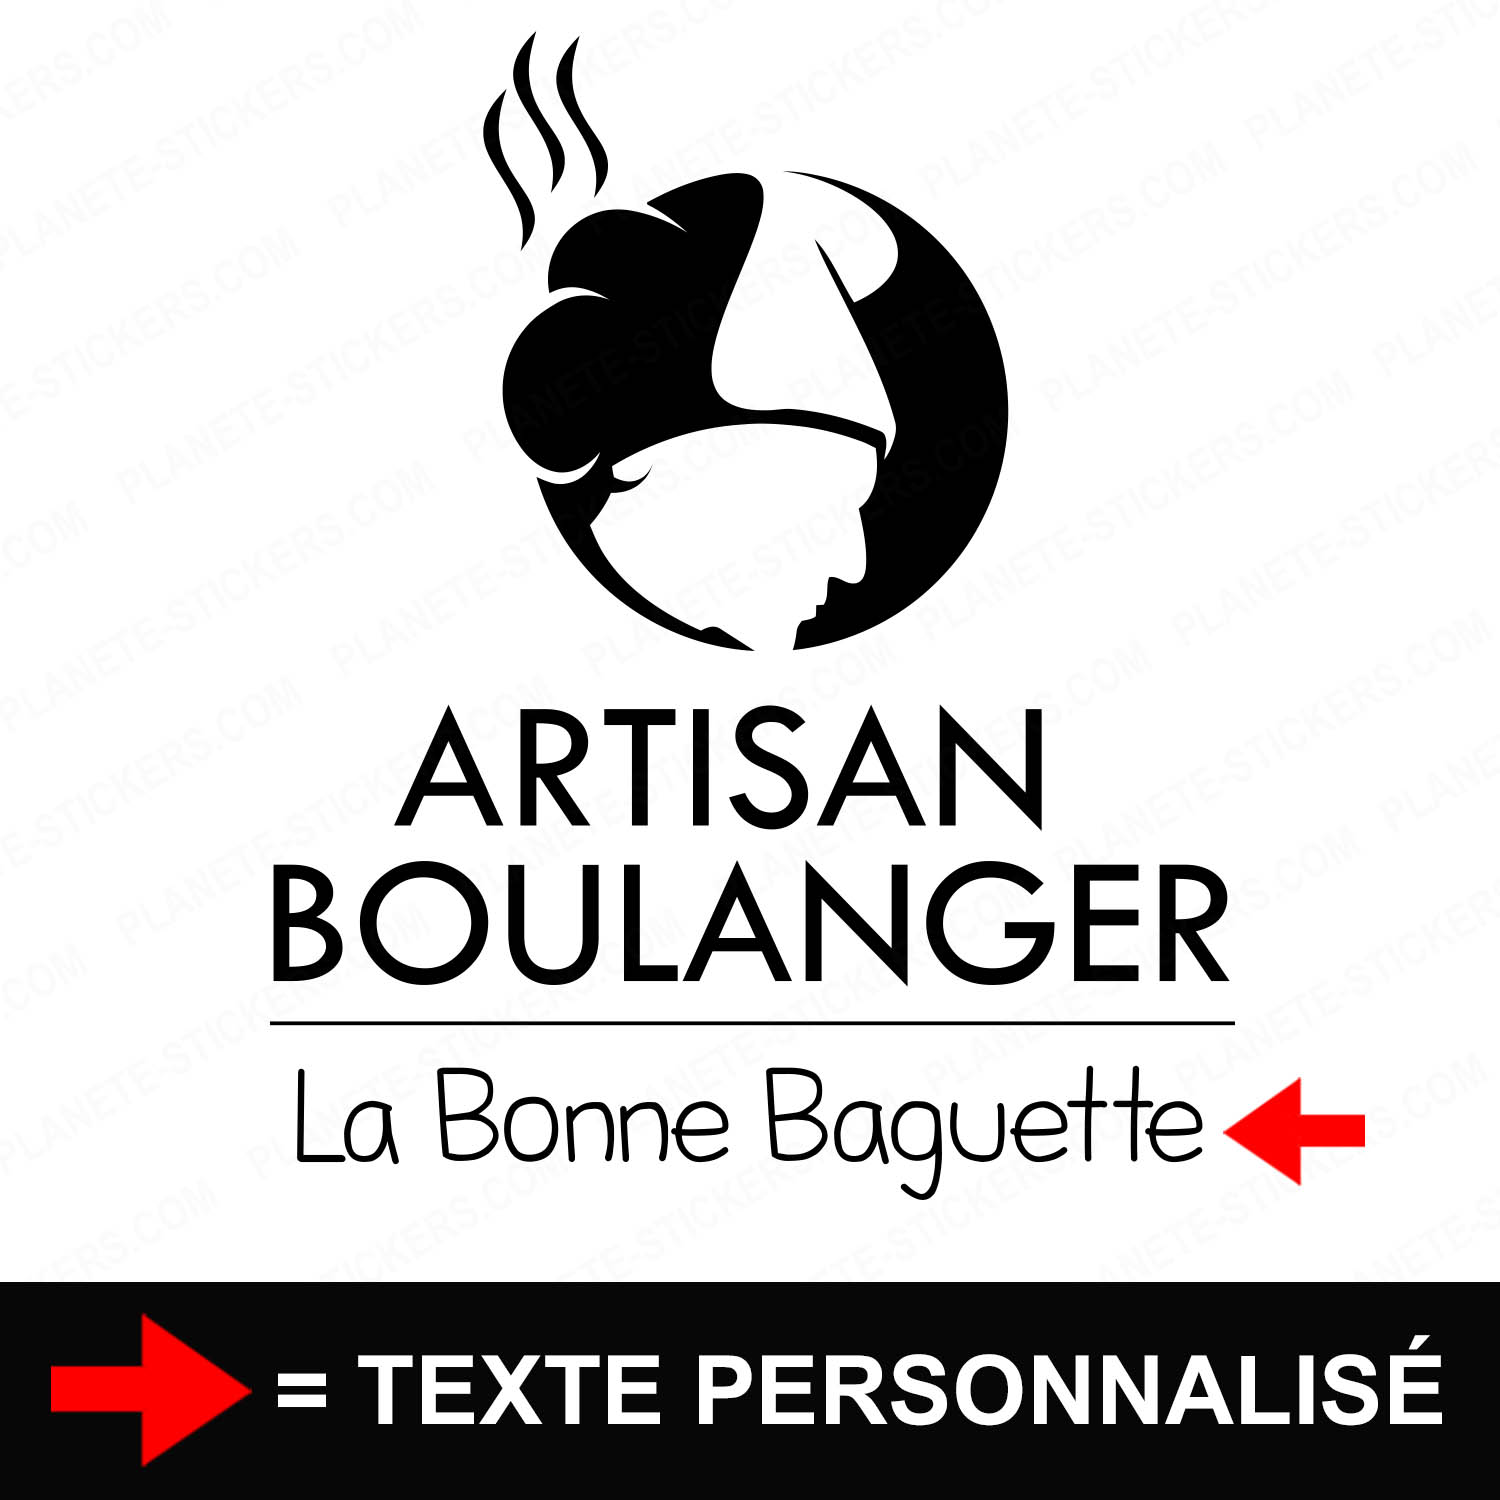 ref10boulangerievitrine-stickers-boulangerie-patisserie-vitrine-sticker-personnalisé-autocollant-boutique-pro-boulanger-patissier-artisan-toque-professionnel-1